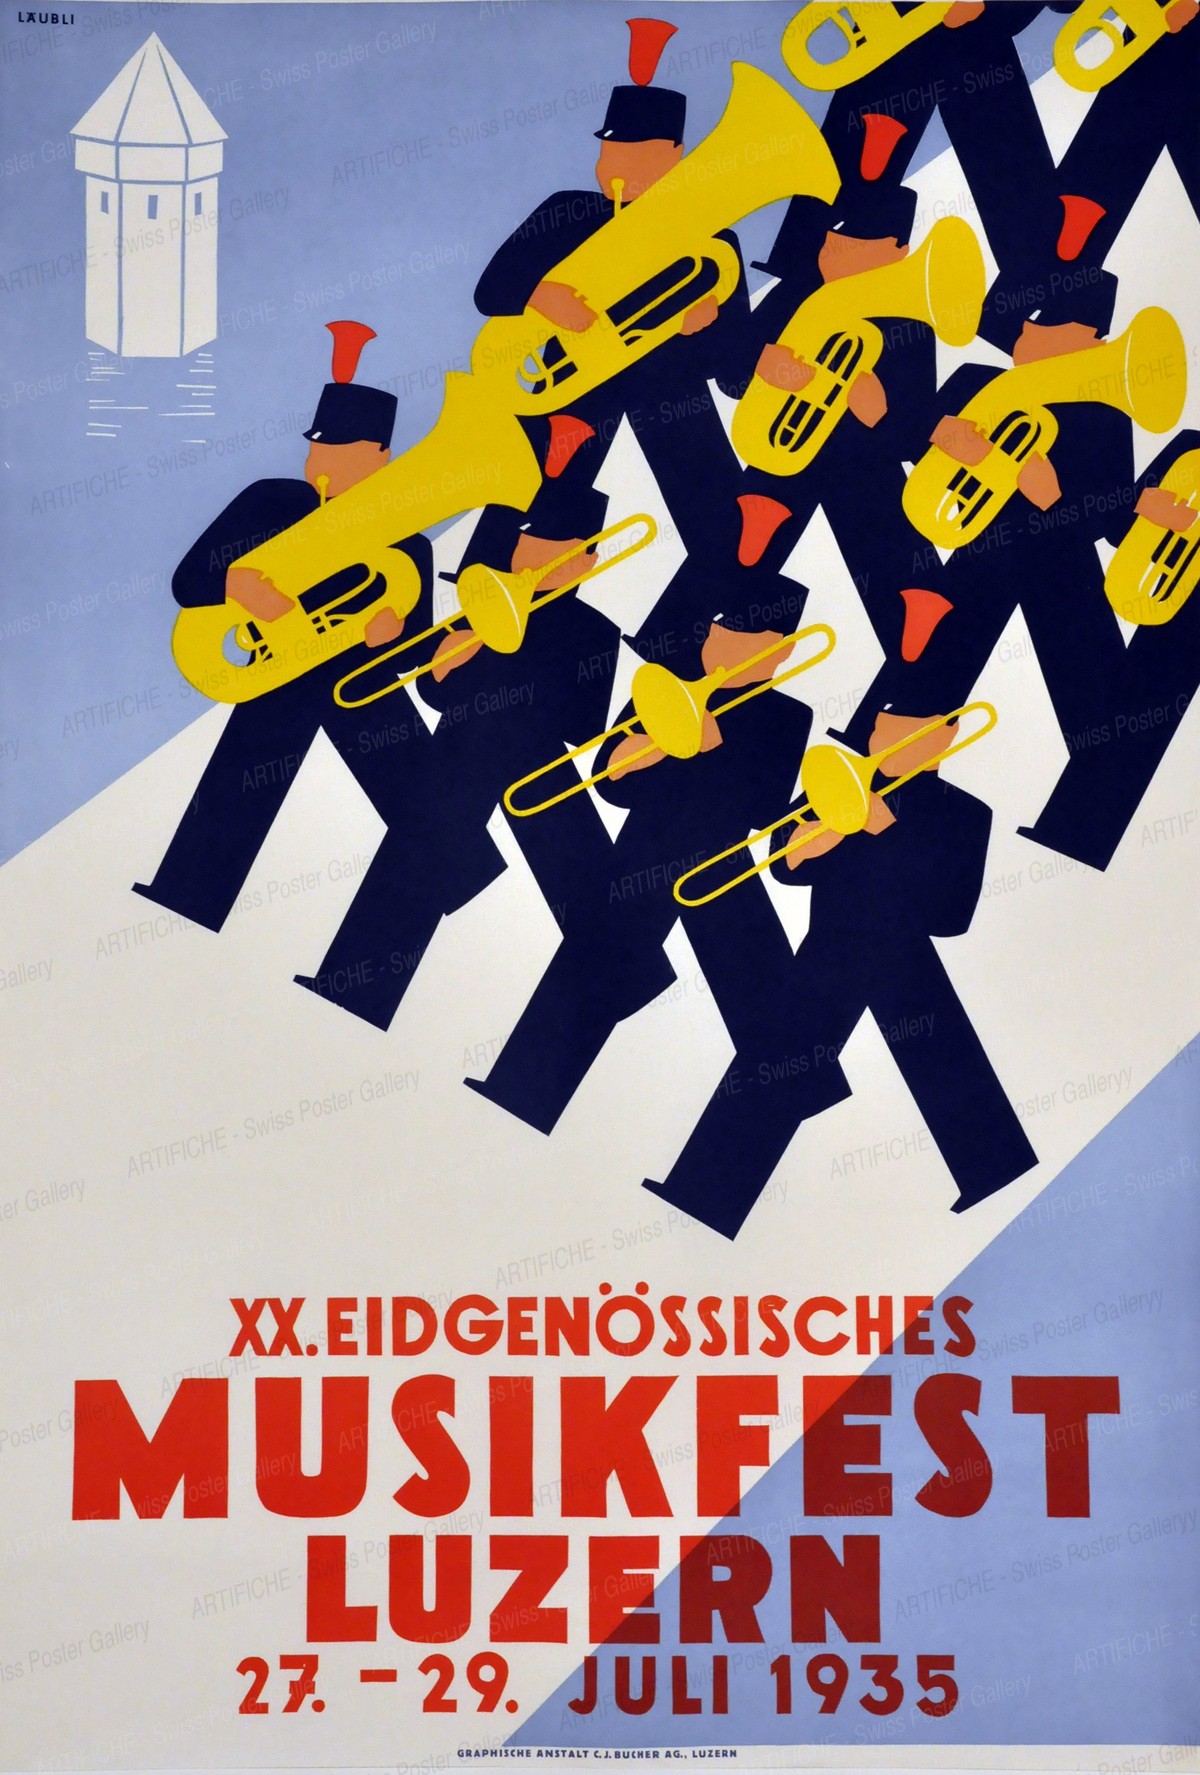 XX. Eidgenössisches Musikfest Luzern 27. – 29. Juli 1935, Walter Läubli